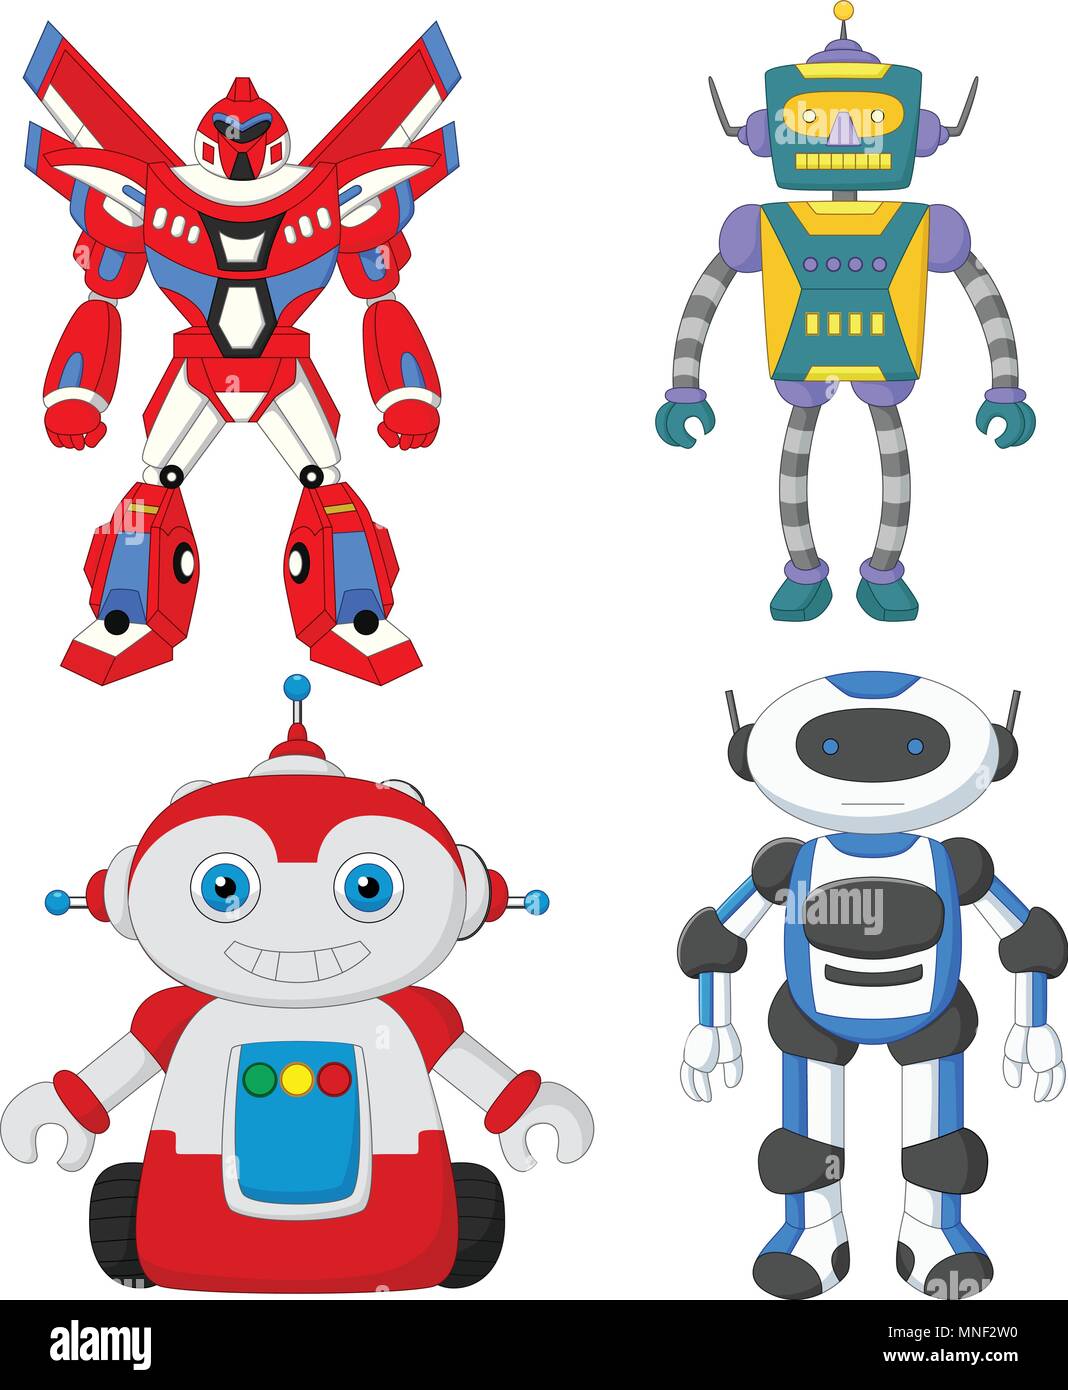 Cartoon cute robot collection set Stock Vector